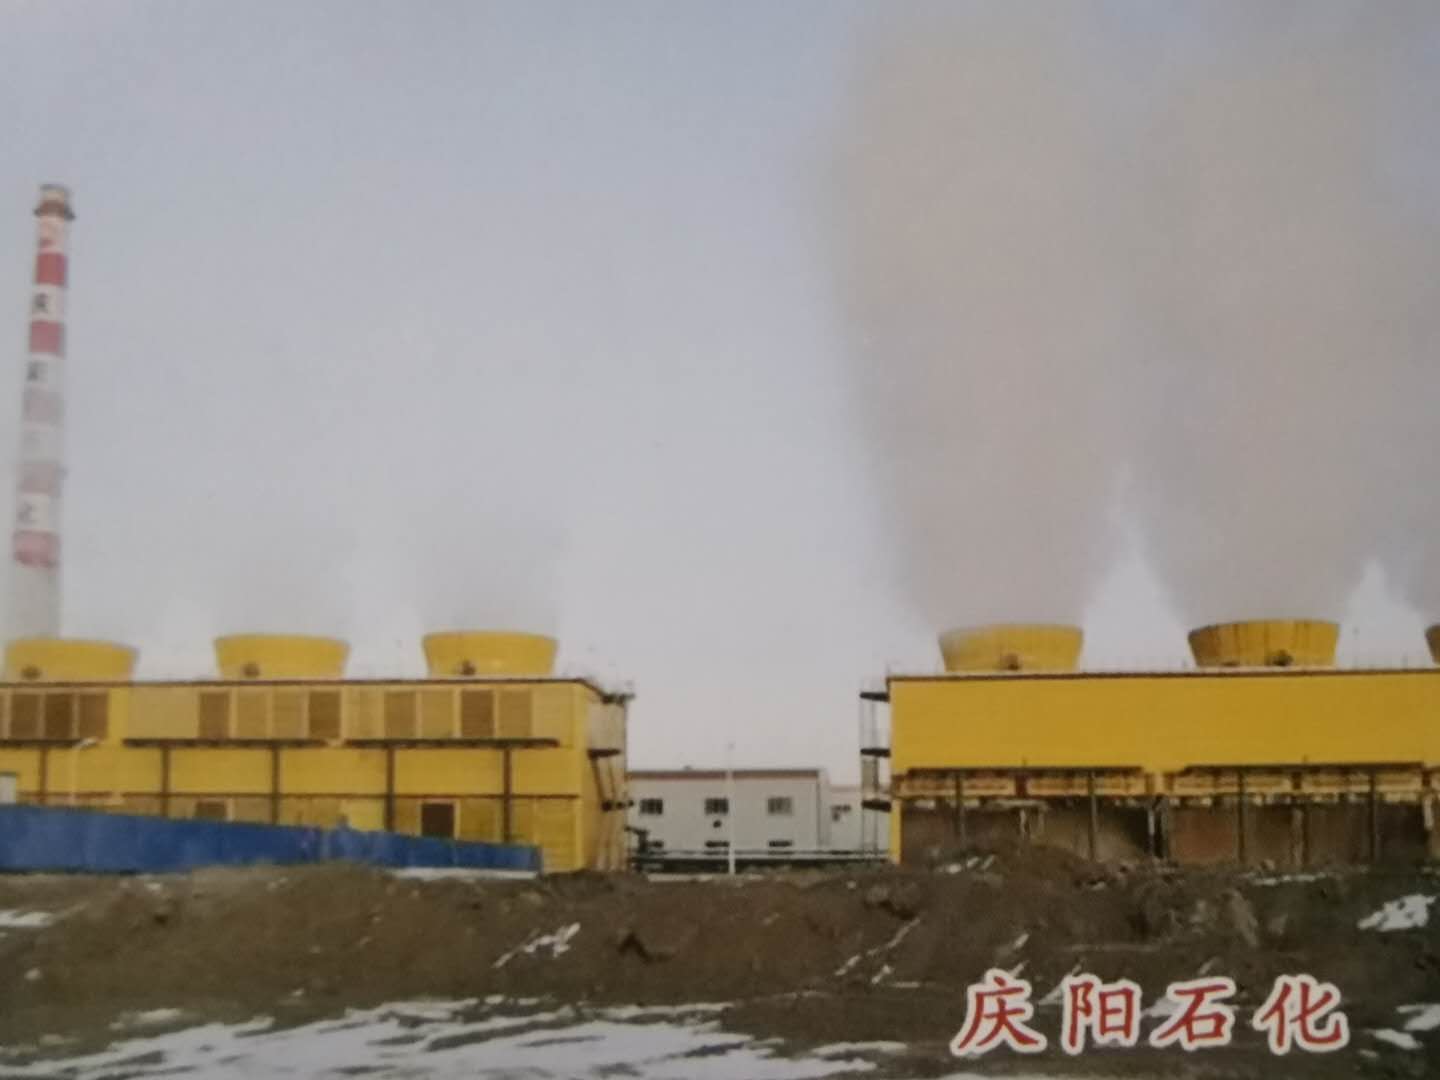 
中国石油庆lol外围阳石化300万吨级搬迁改造集中加工项目环境影响后